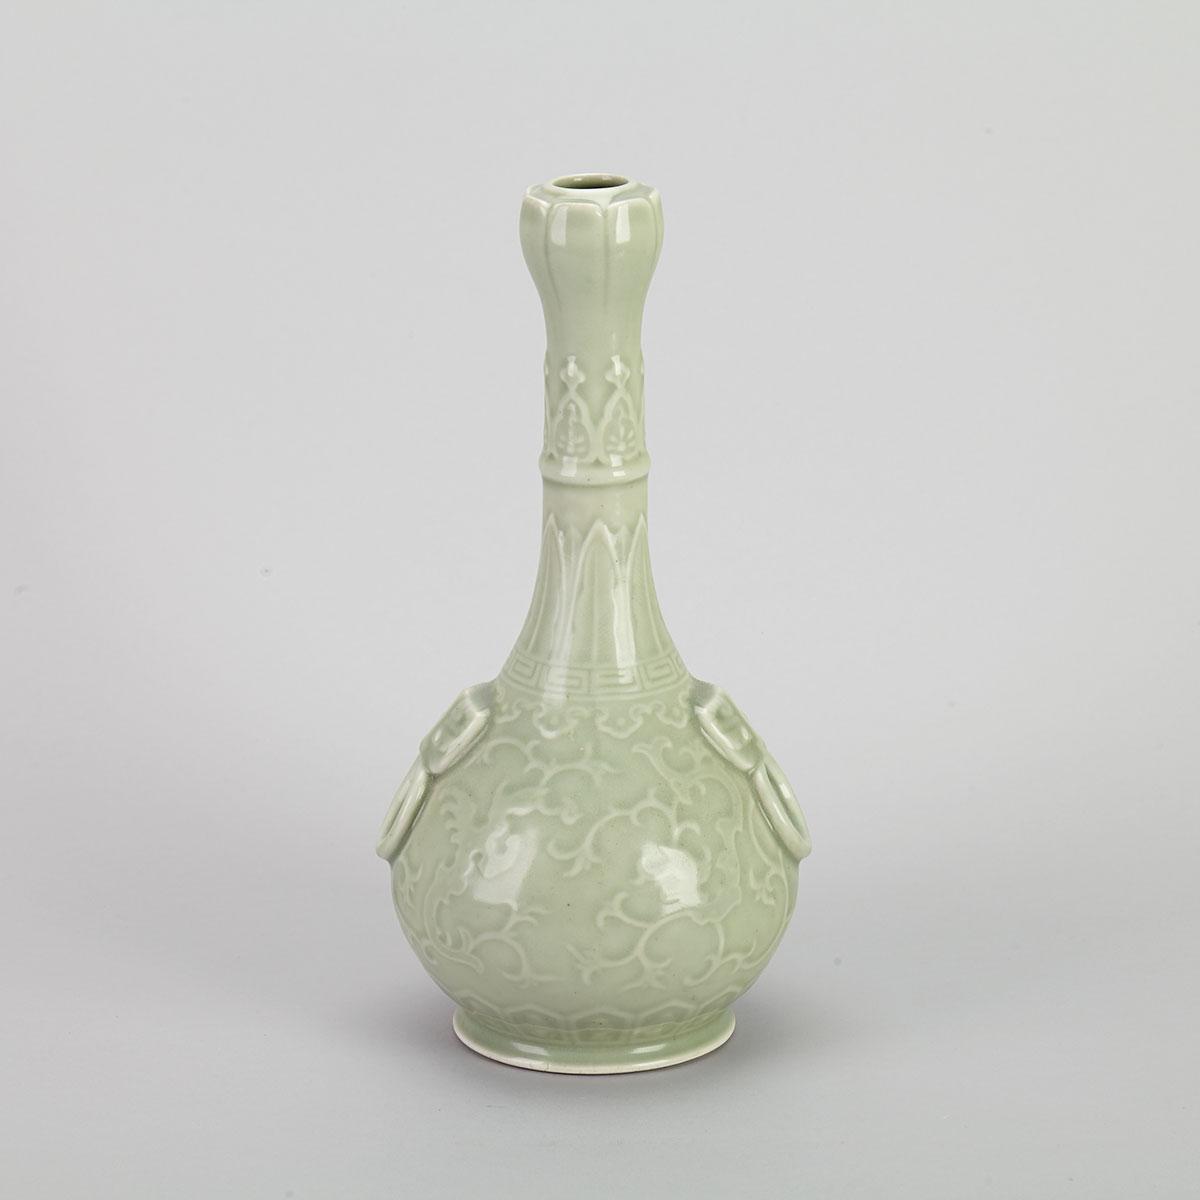 Celadon Carved Garlic Head Vase, Republican Period